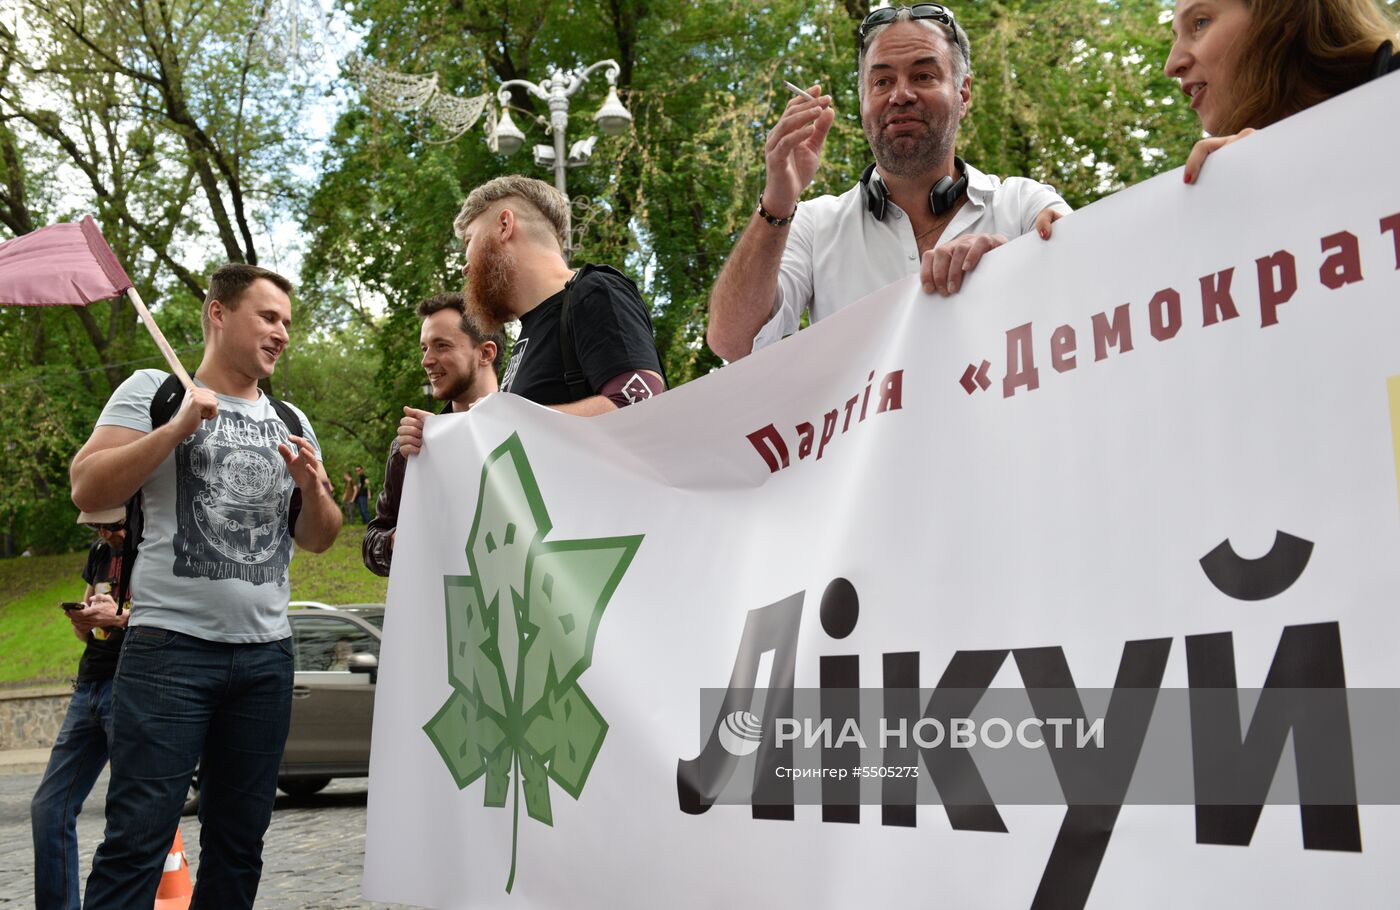 Акция в Киеве с требованием легализации марихуаны